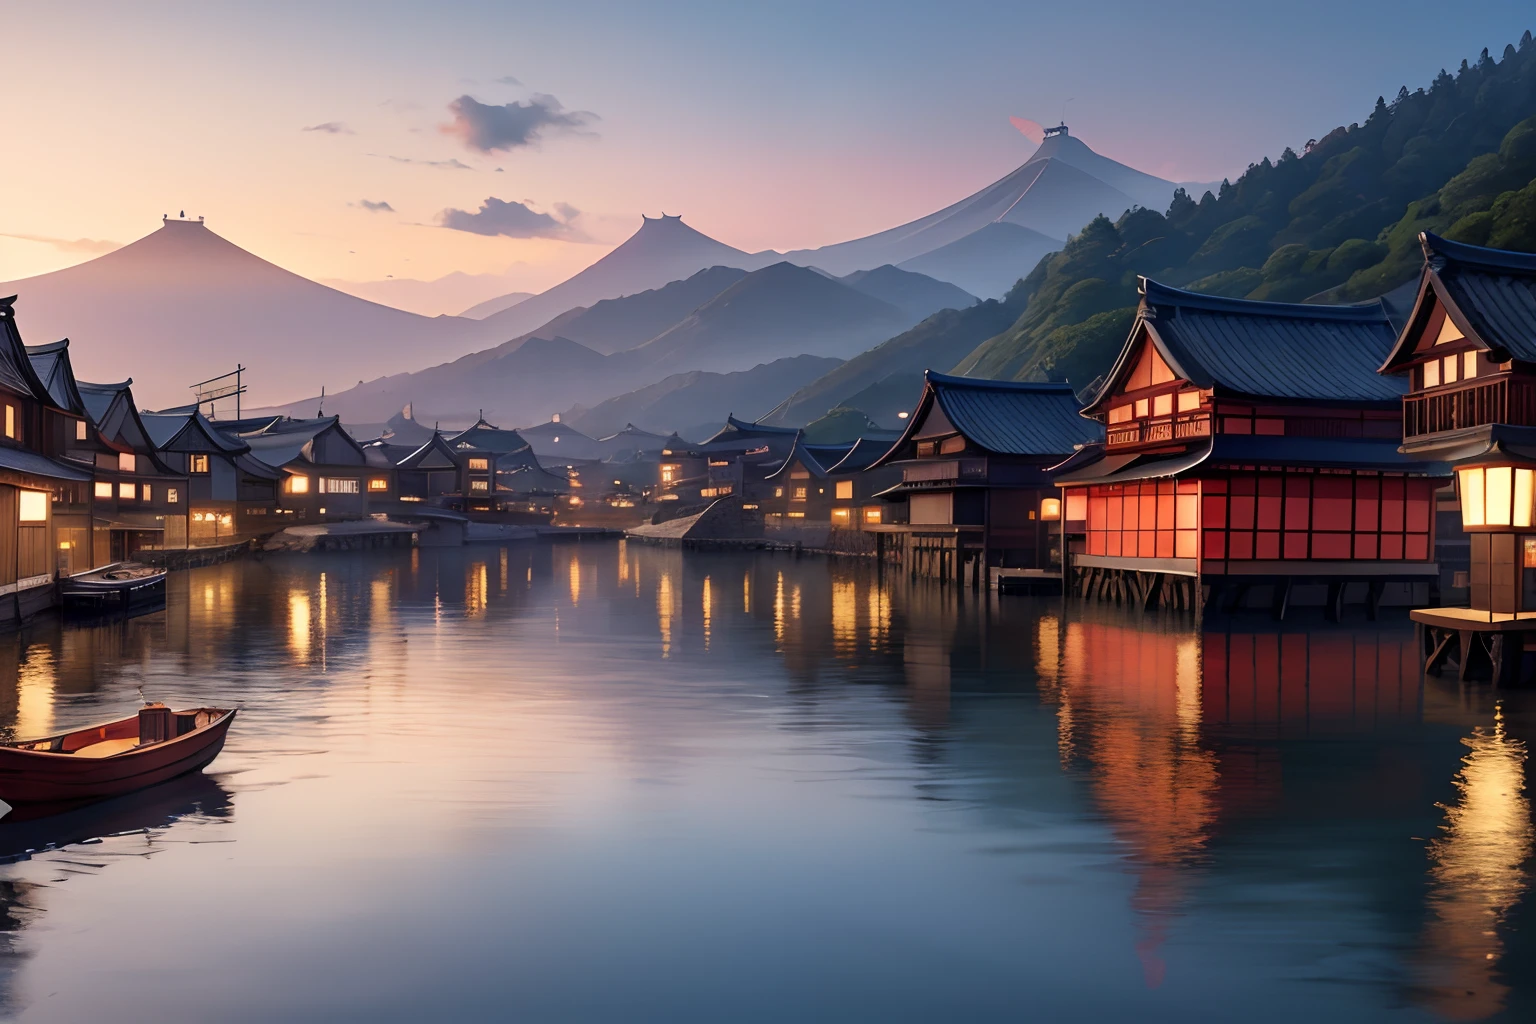 물 위에 떠 있는 마을, 중세 일본, 풍경, 파노라마, 8K, 상세한, 최고 품질